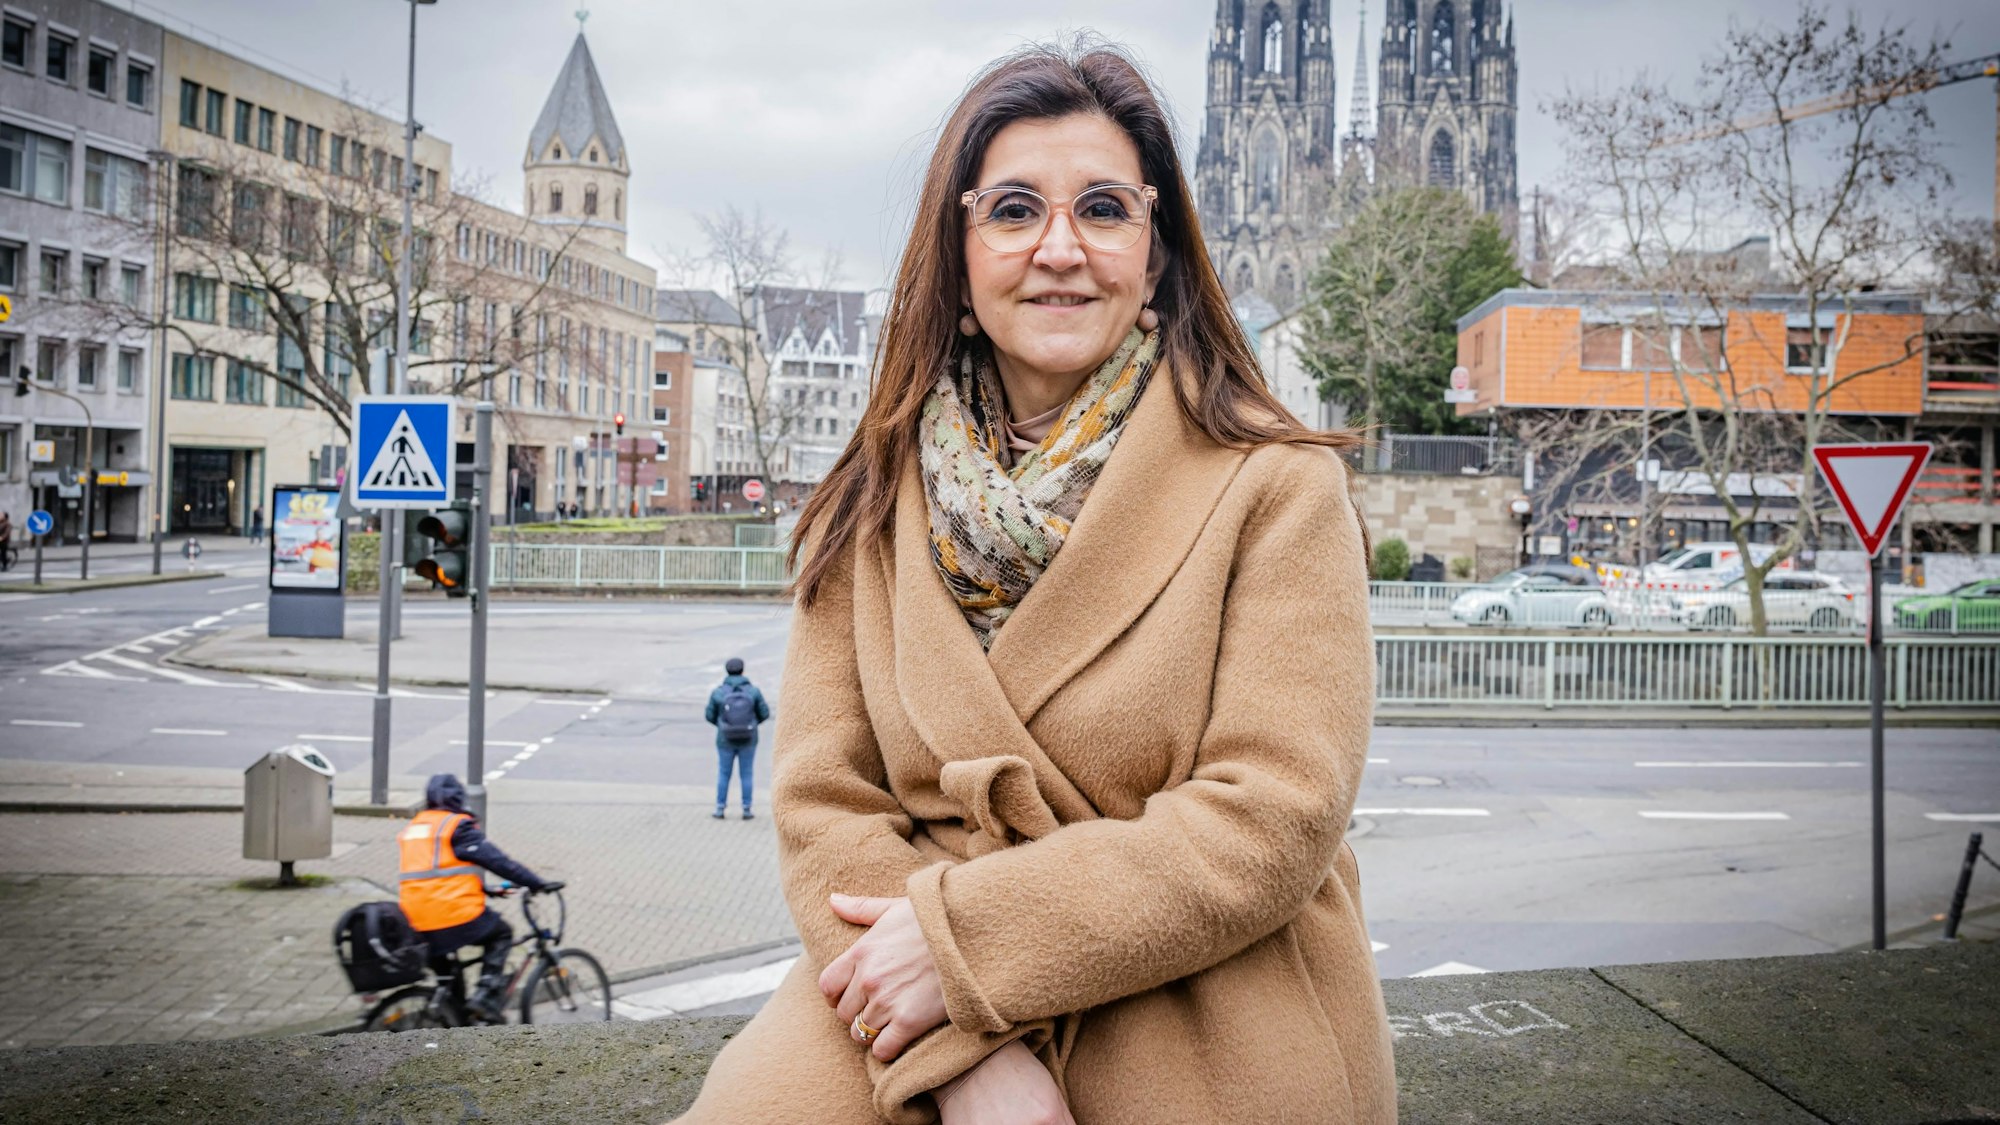 Teresa De Bellis  ist die verkehrspolitische Sprecherin der CDU in Köln